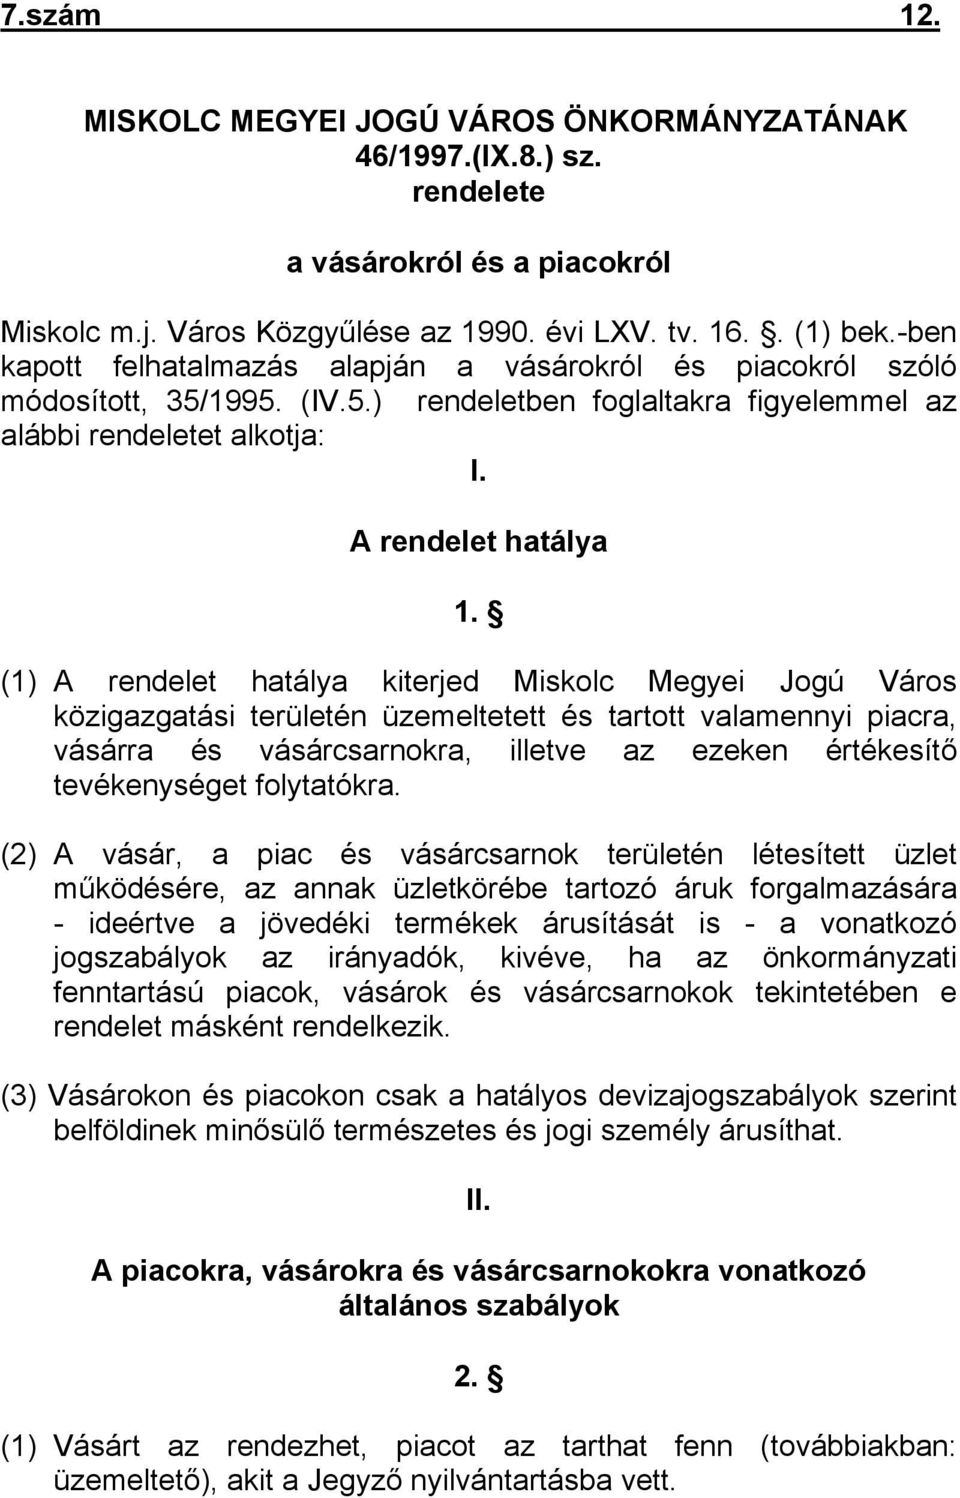 (1) A rendelet hatálya kiterjed Miskolc Megyei Jogú Város közigazgatási területén üzemeltetett és tartott valamennyi piacra, vásárra és vásárcsarnokra, illetve az ezeken értékesítő tevékenységet